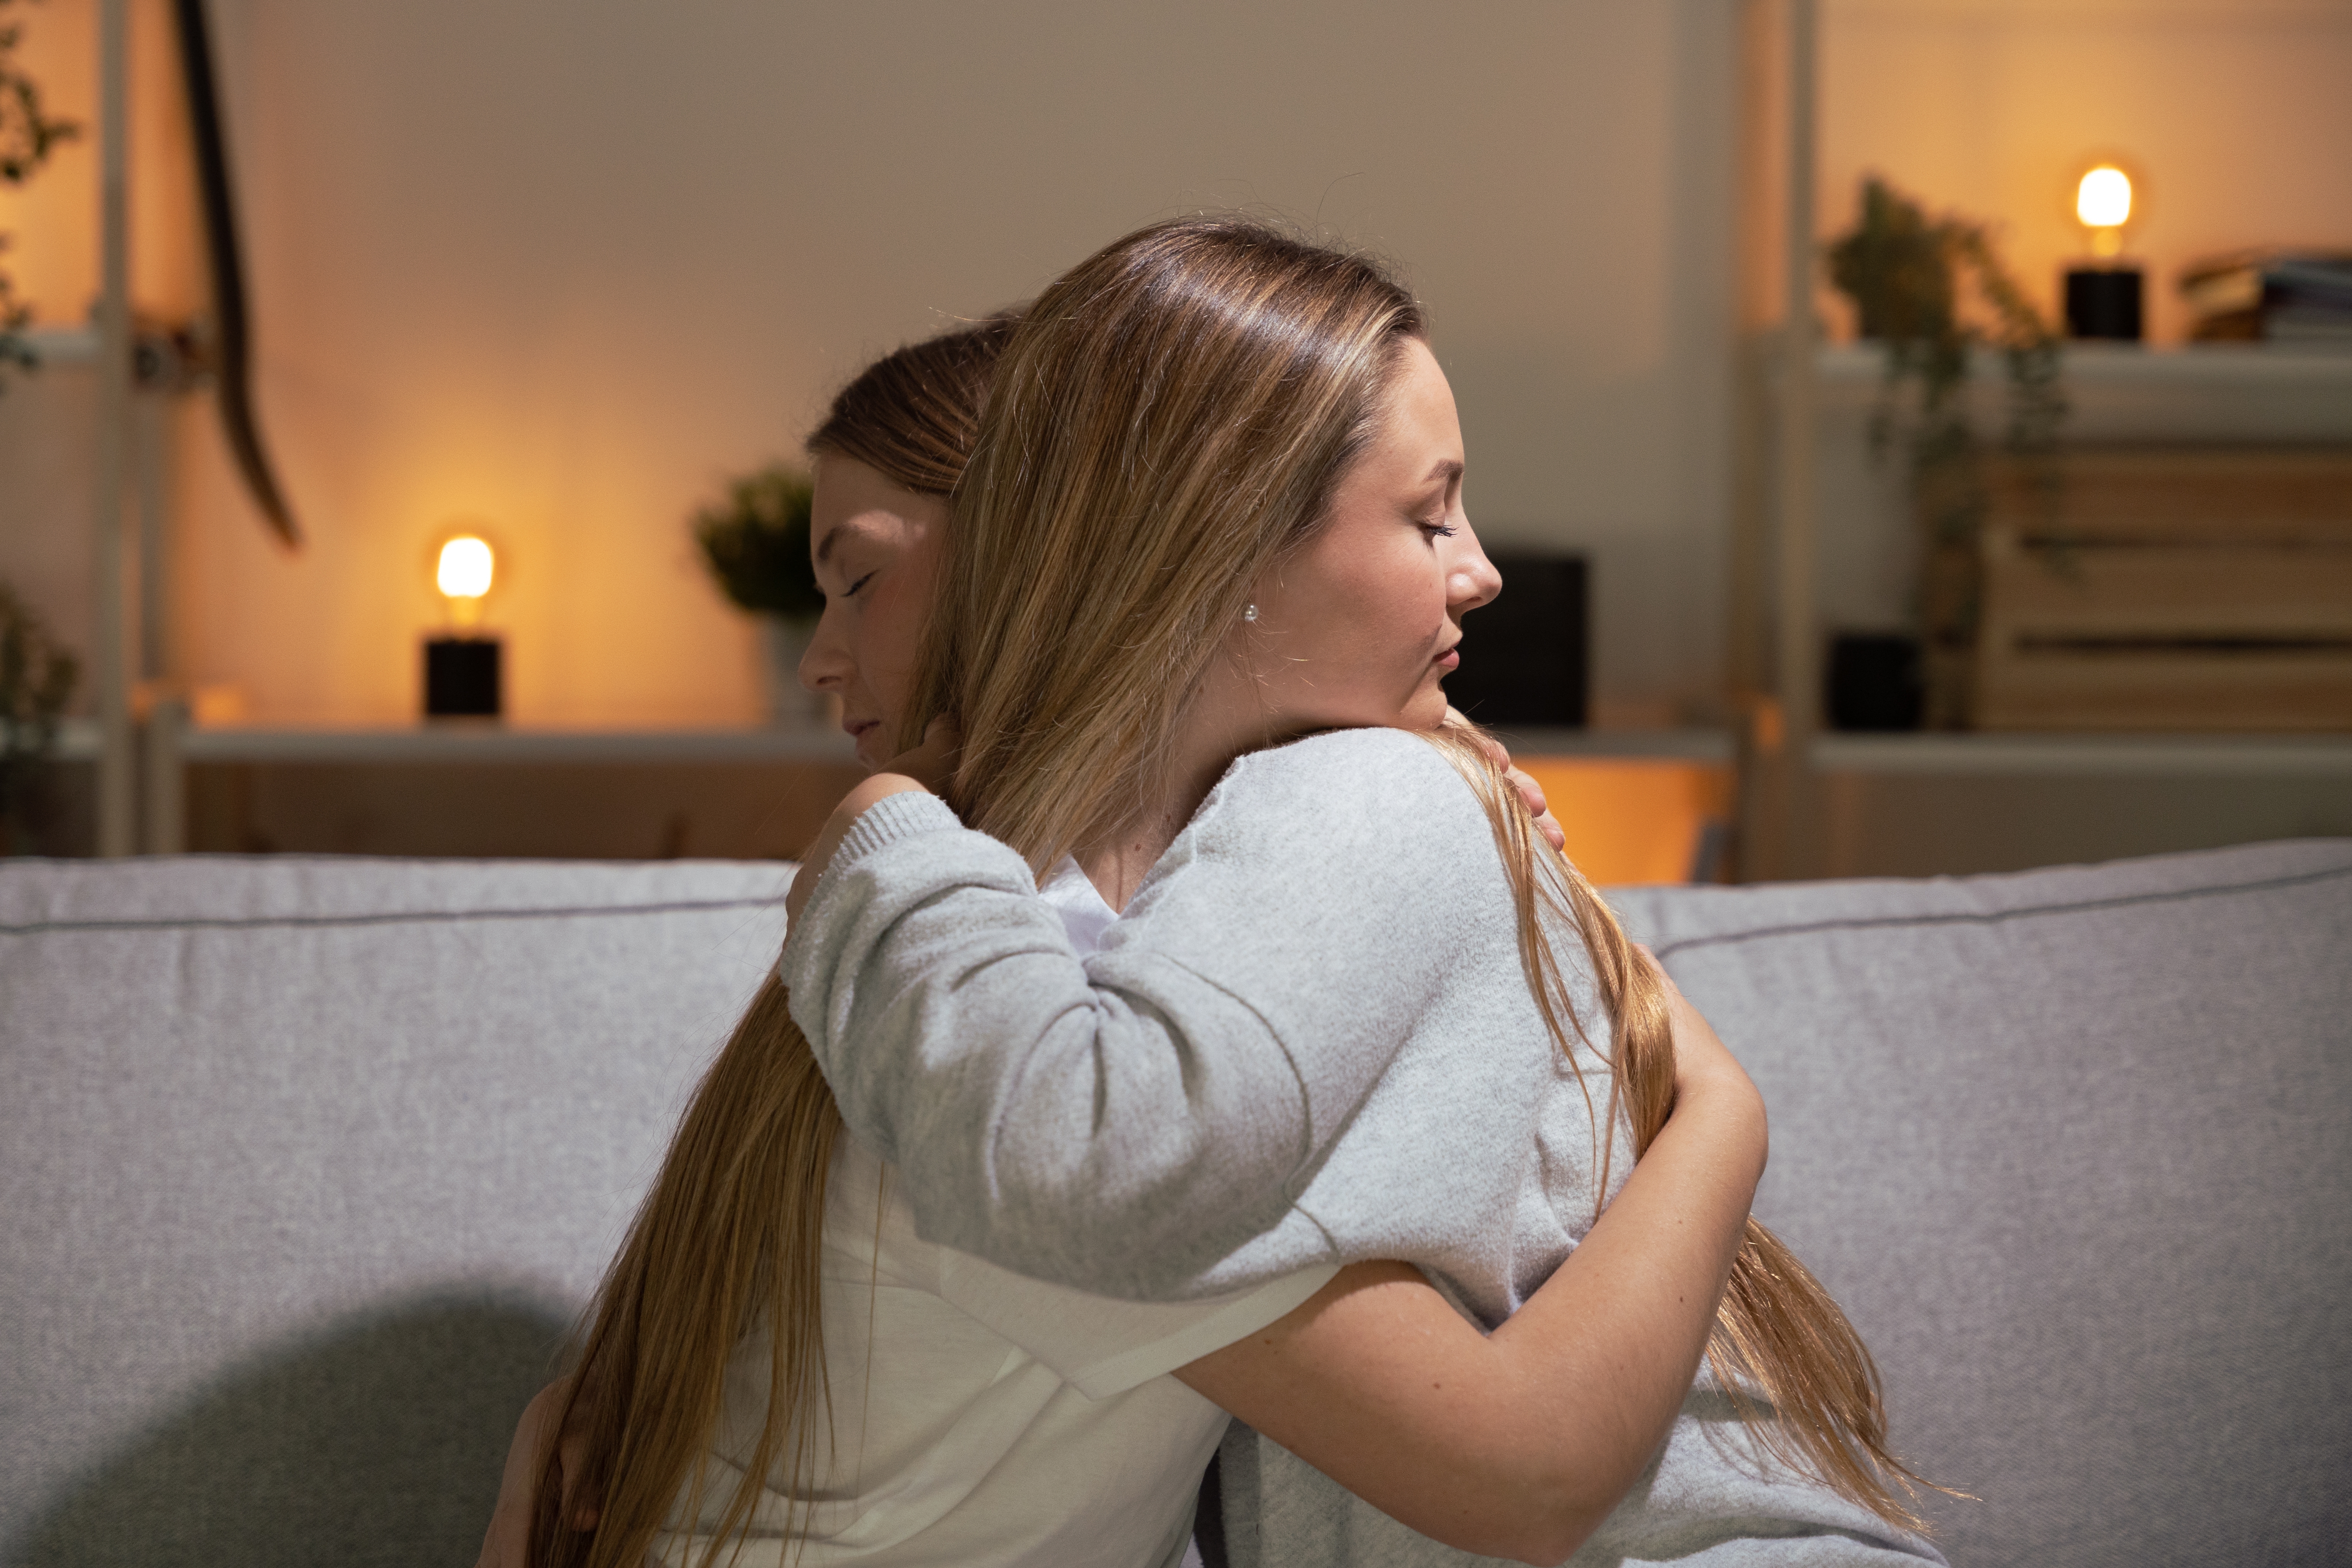 Une femme prend une autre femme dans ses bras pour la réconforter | Source : Shutterstock